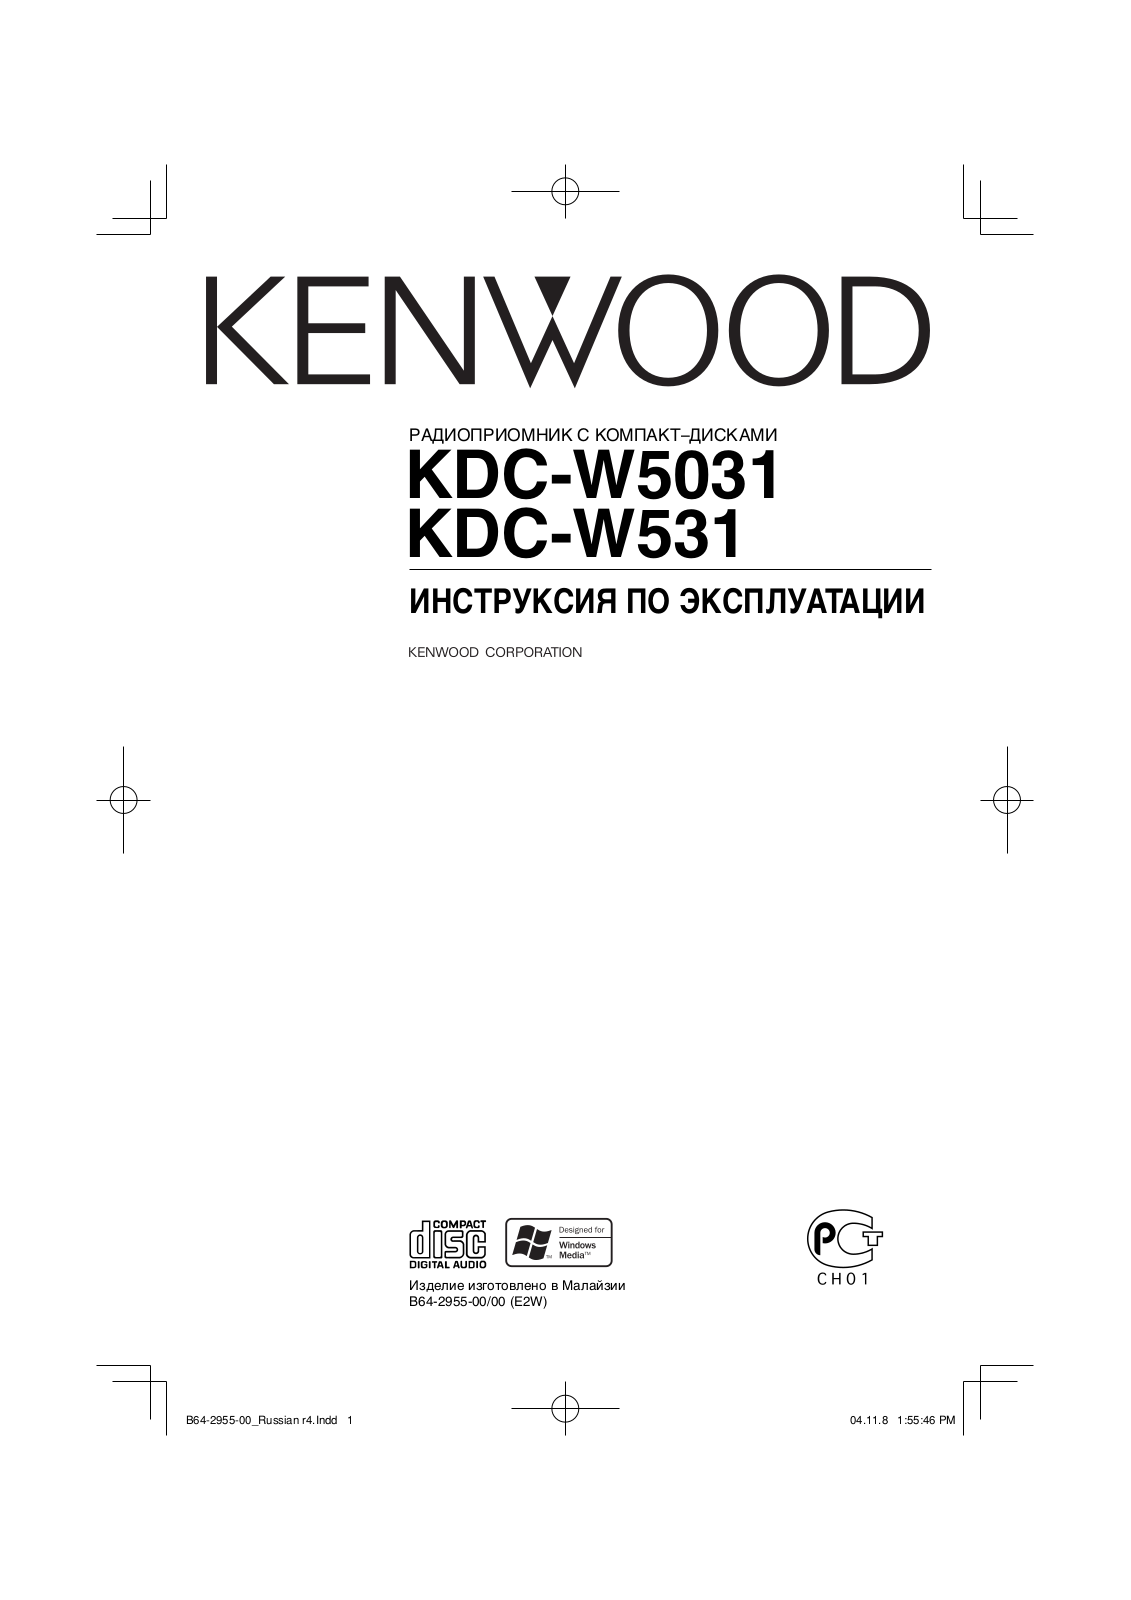 Kenwood KDC-W531 User Manual